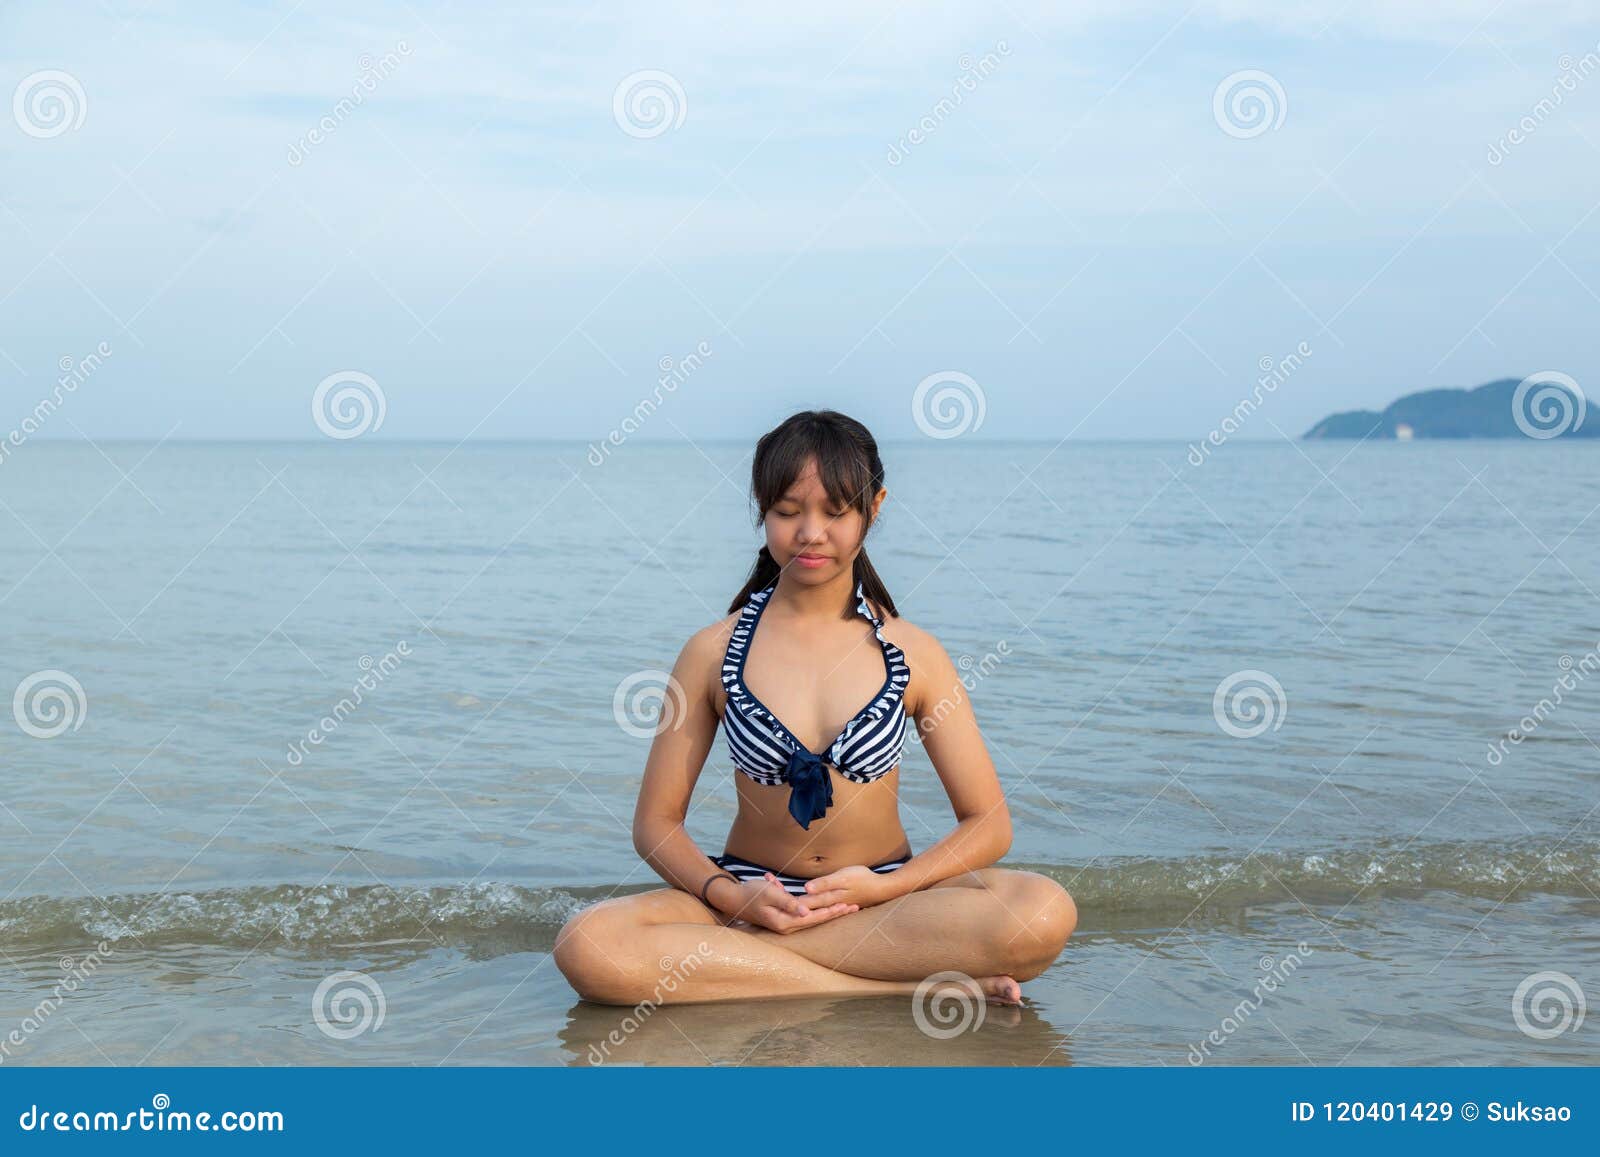 132 Beautiful Teenage Girl Bikini Sitting Beach Stock Photos